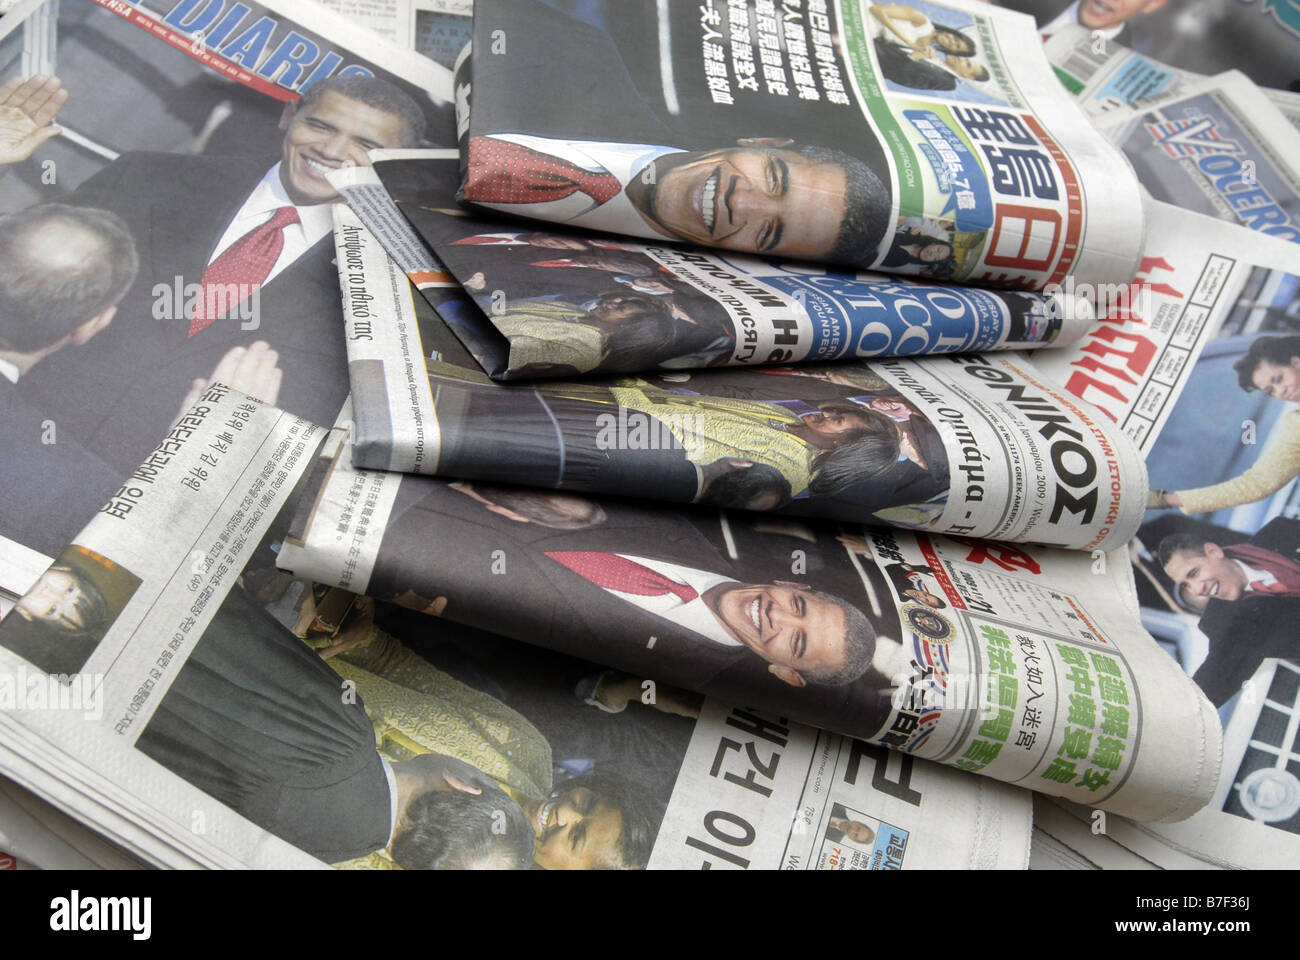 Ethnische Zeitungen in New York decken die Zeremonien der Einweihung von Barack Obama Stockfoto